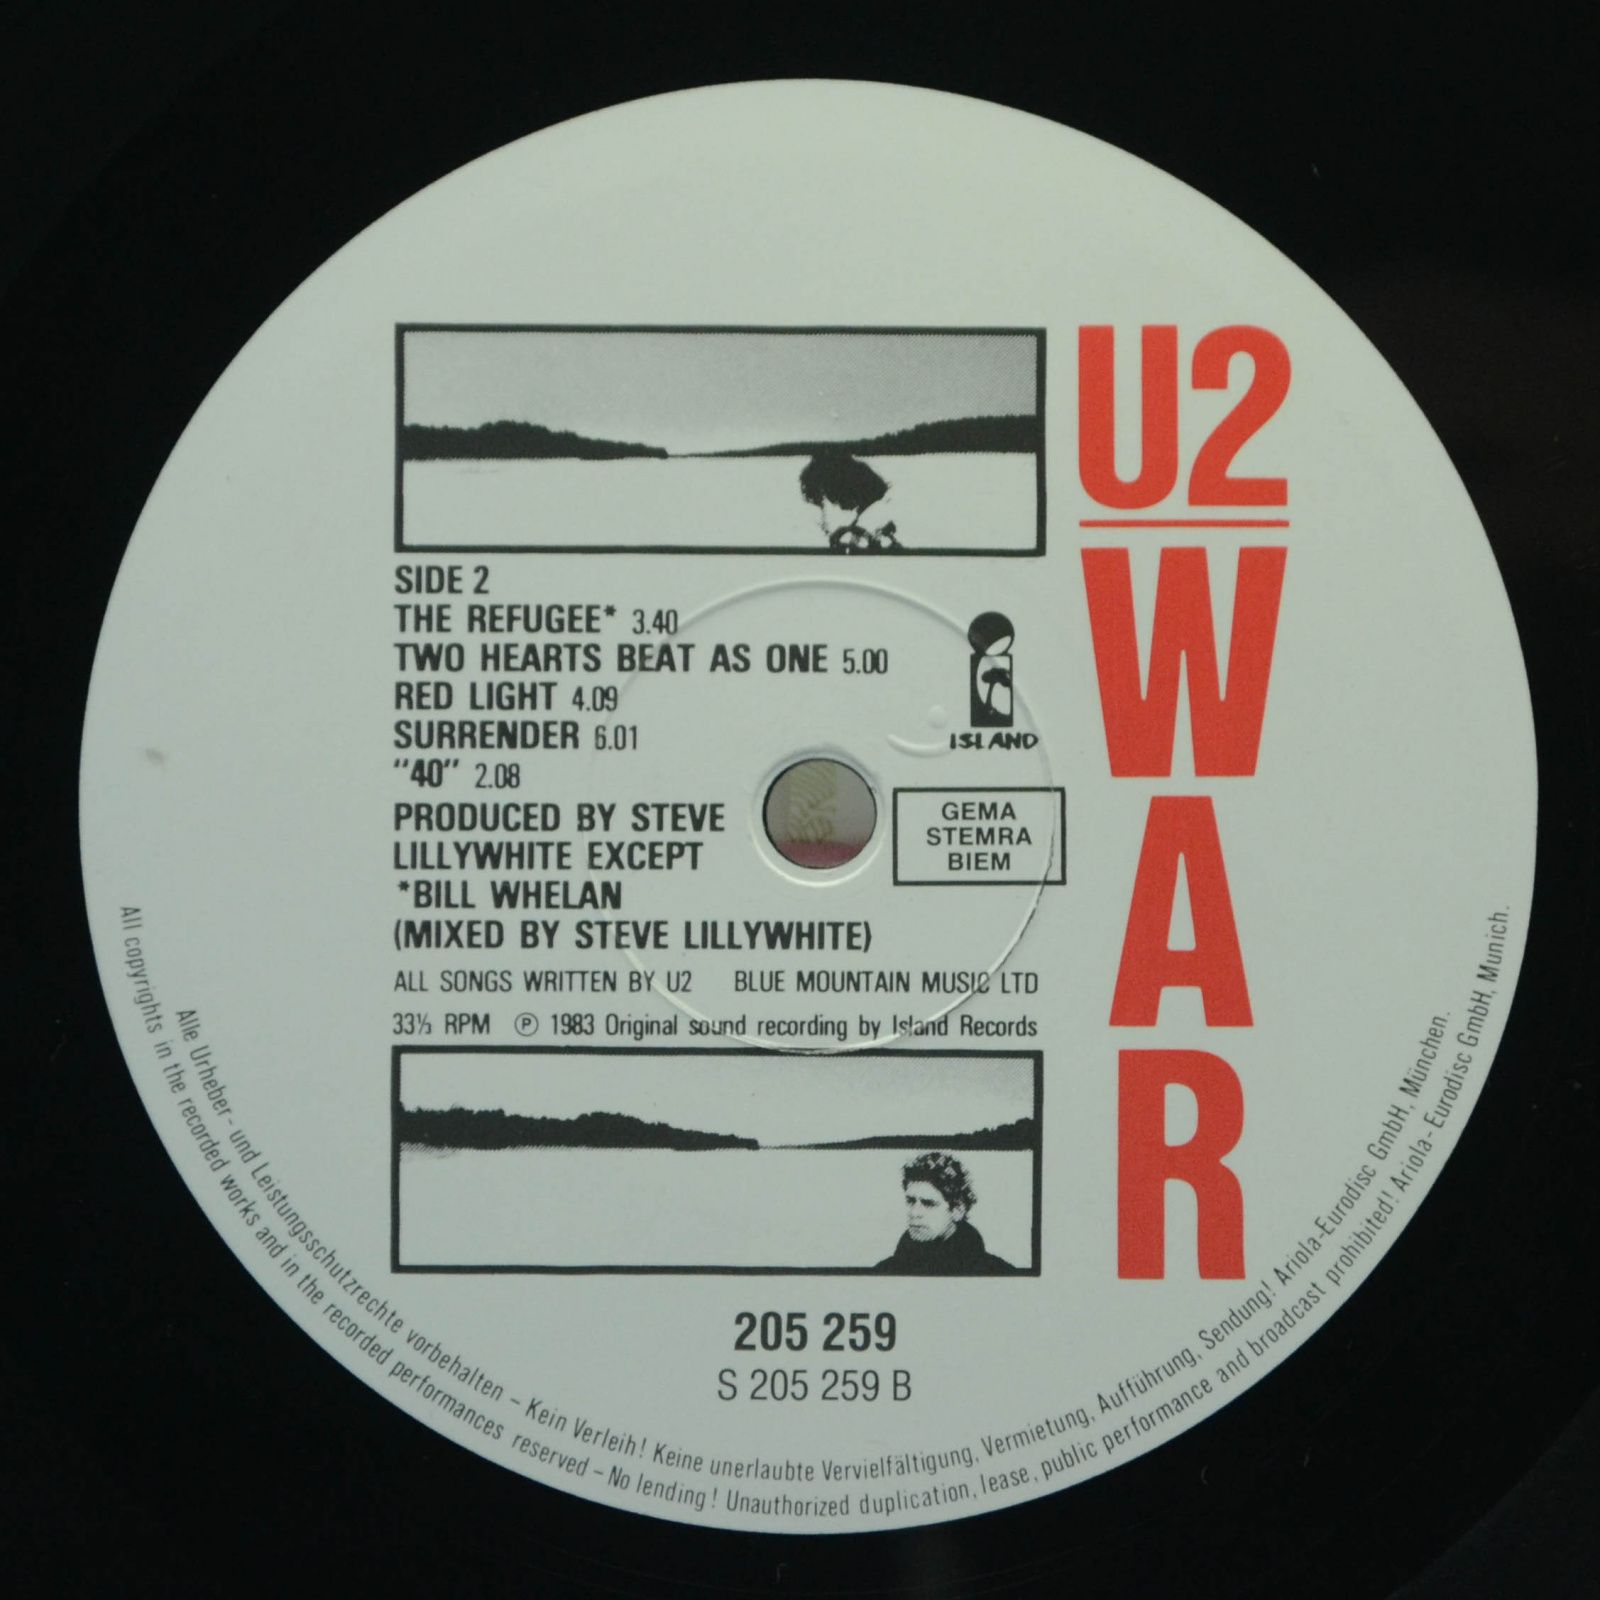 U2 — War, 1985